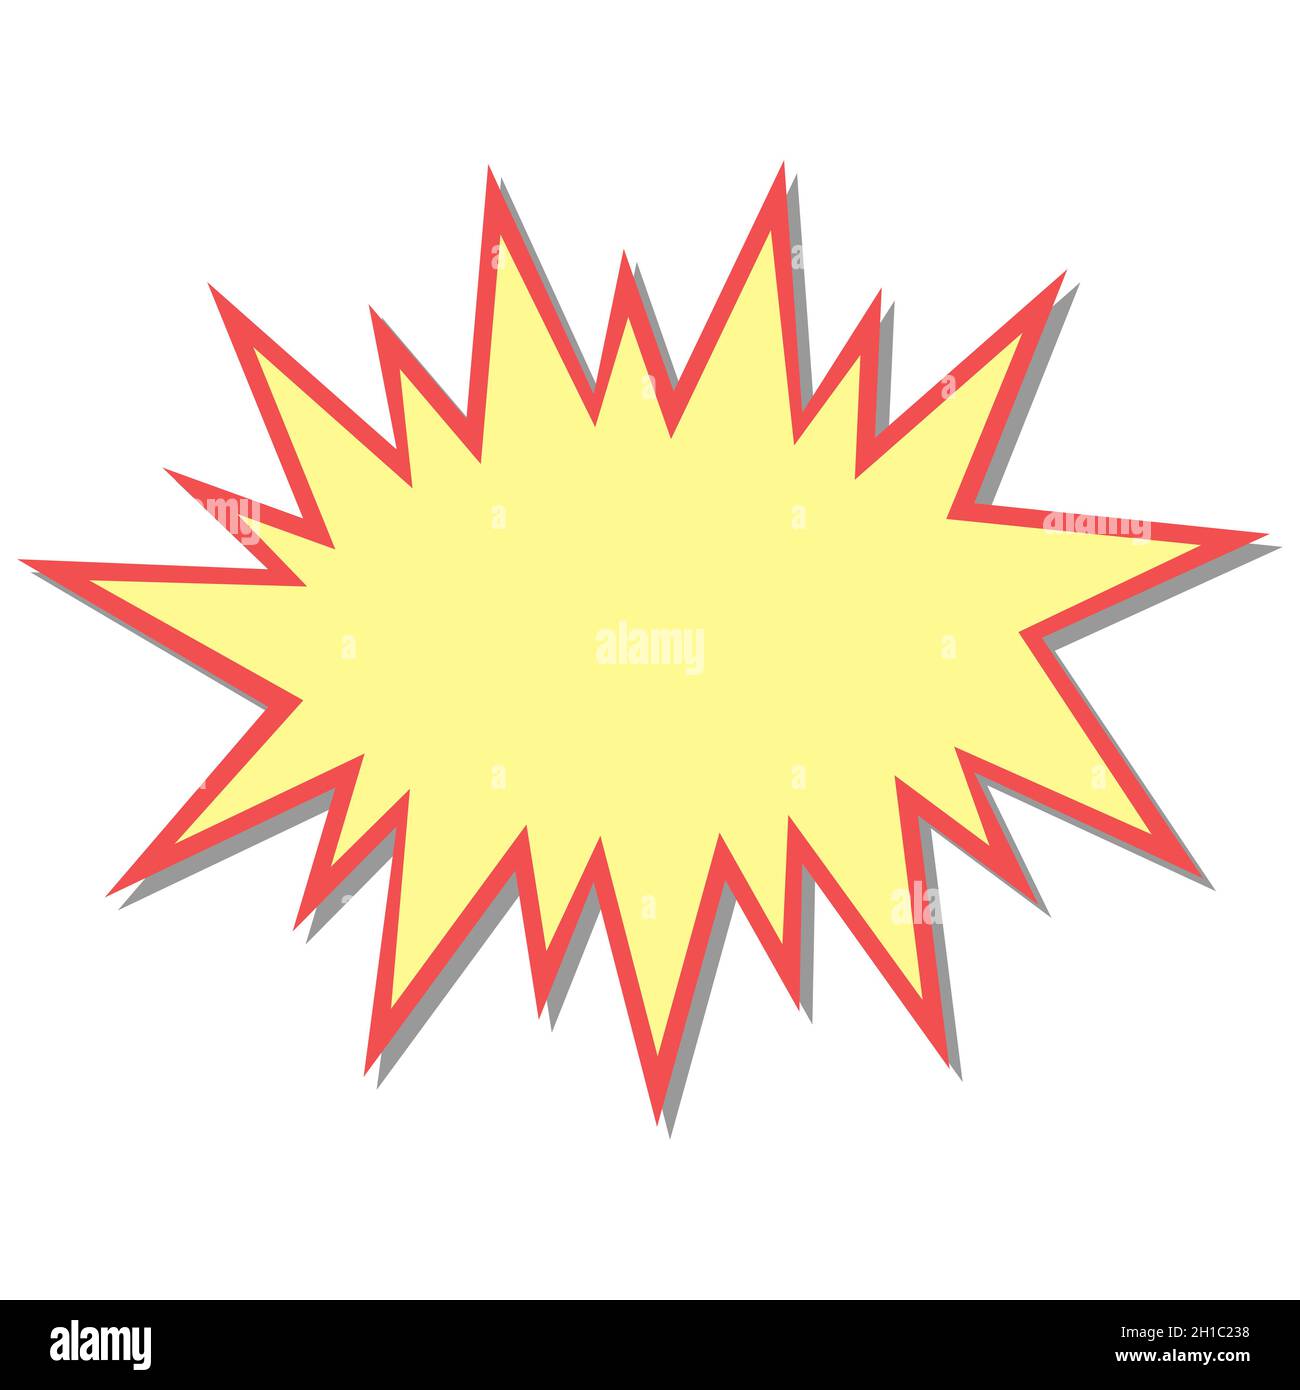 Flash starburst stars in cartoon style, speech bubble icon stock illustration Stock Vector